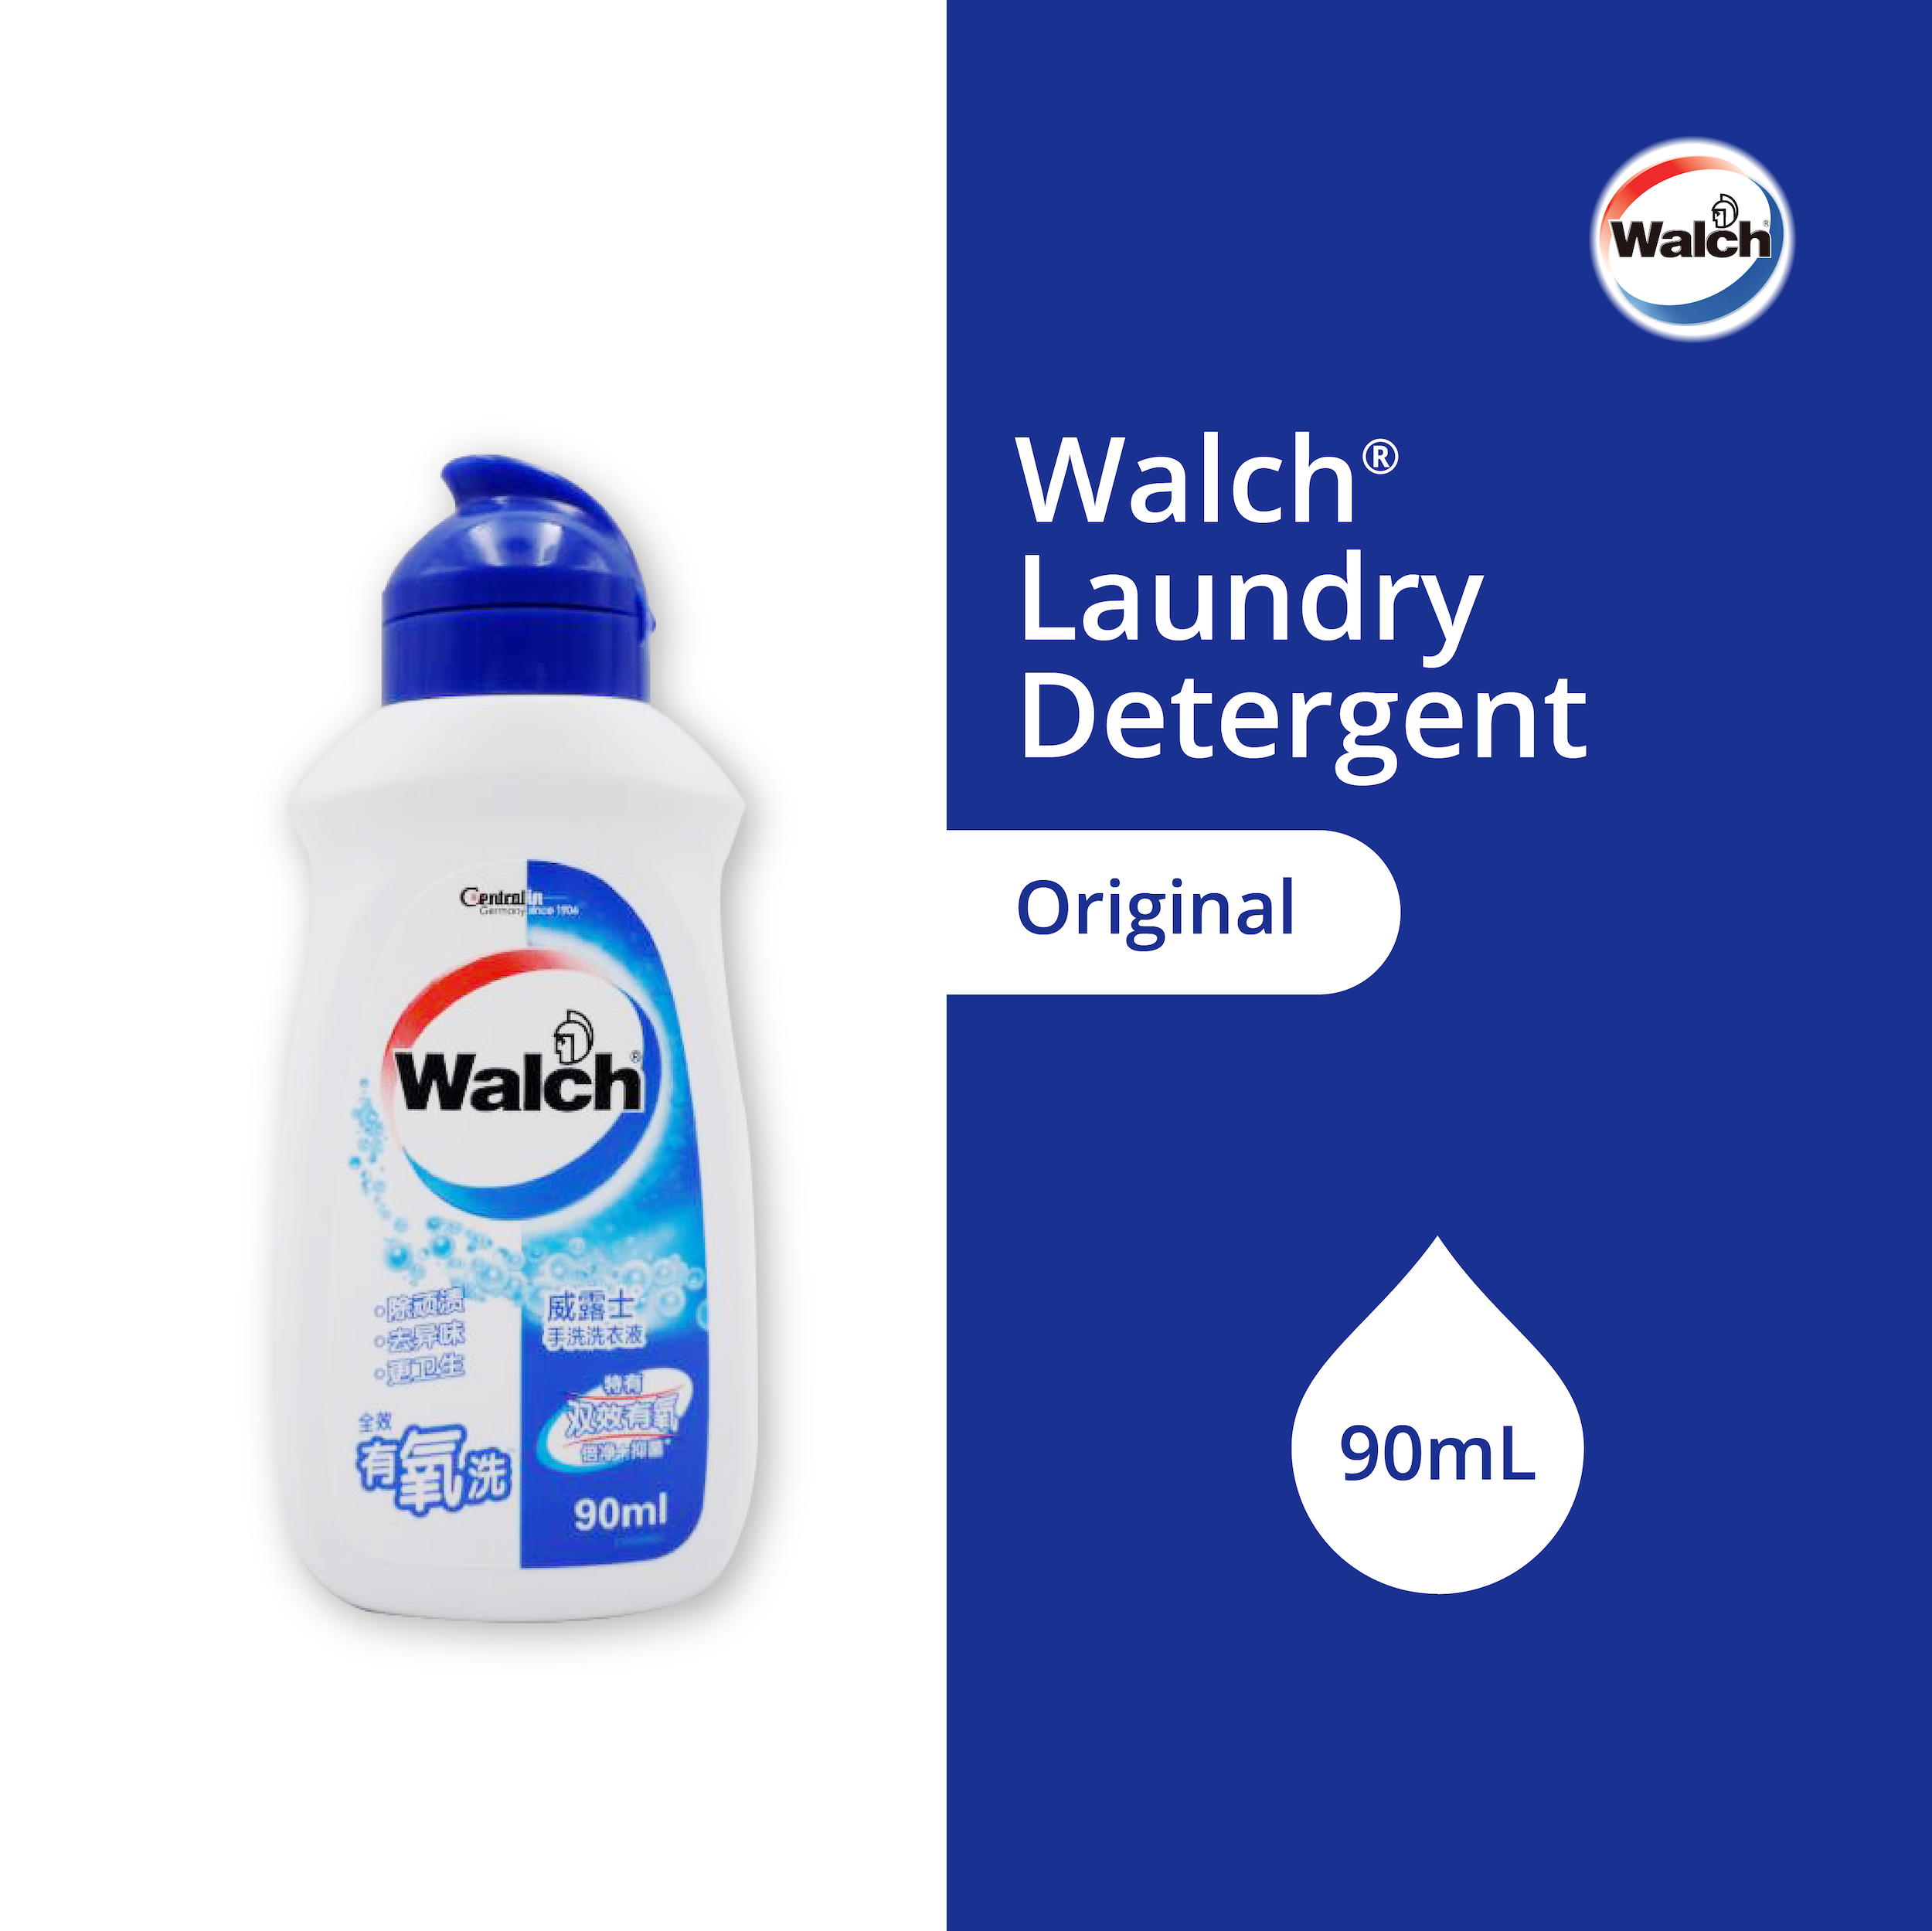 Walch® Laundry Detergent 90ml – Original